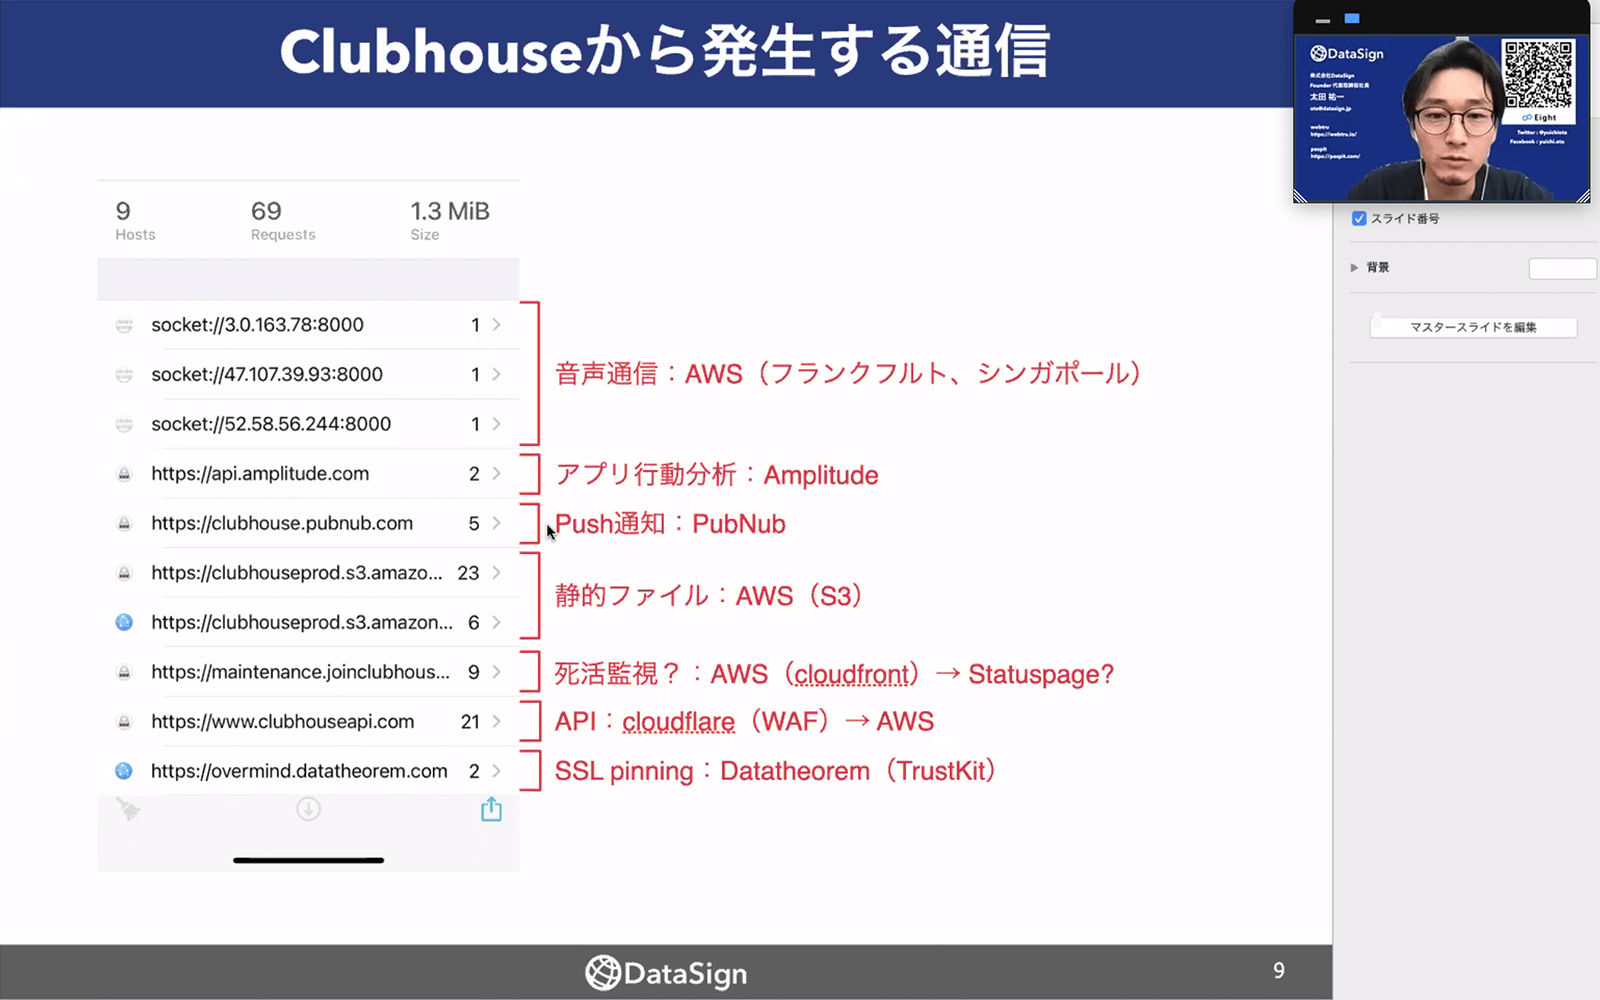 専門ソフトウェアを使い、Clubhouseからサーバーに送信される情報を解析